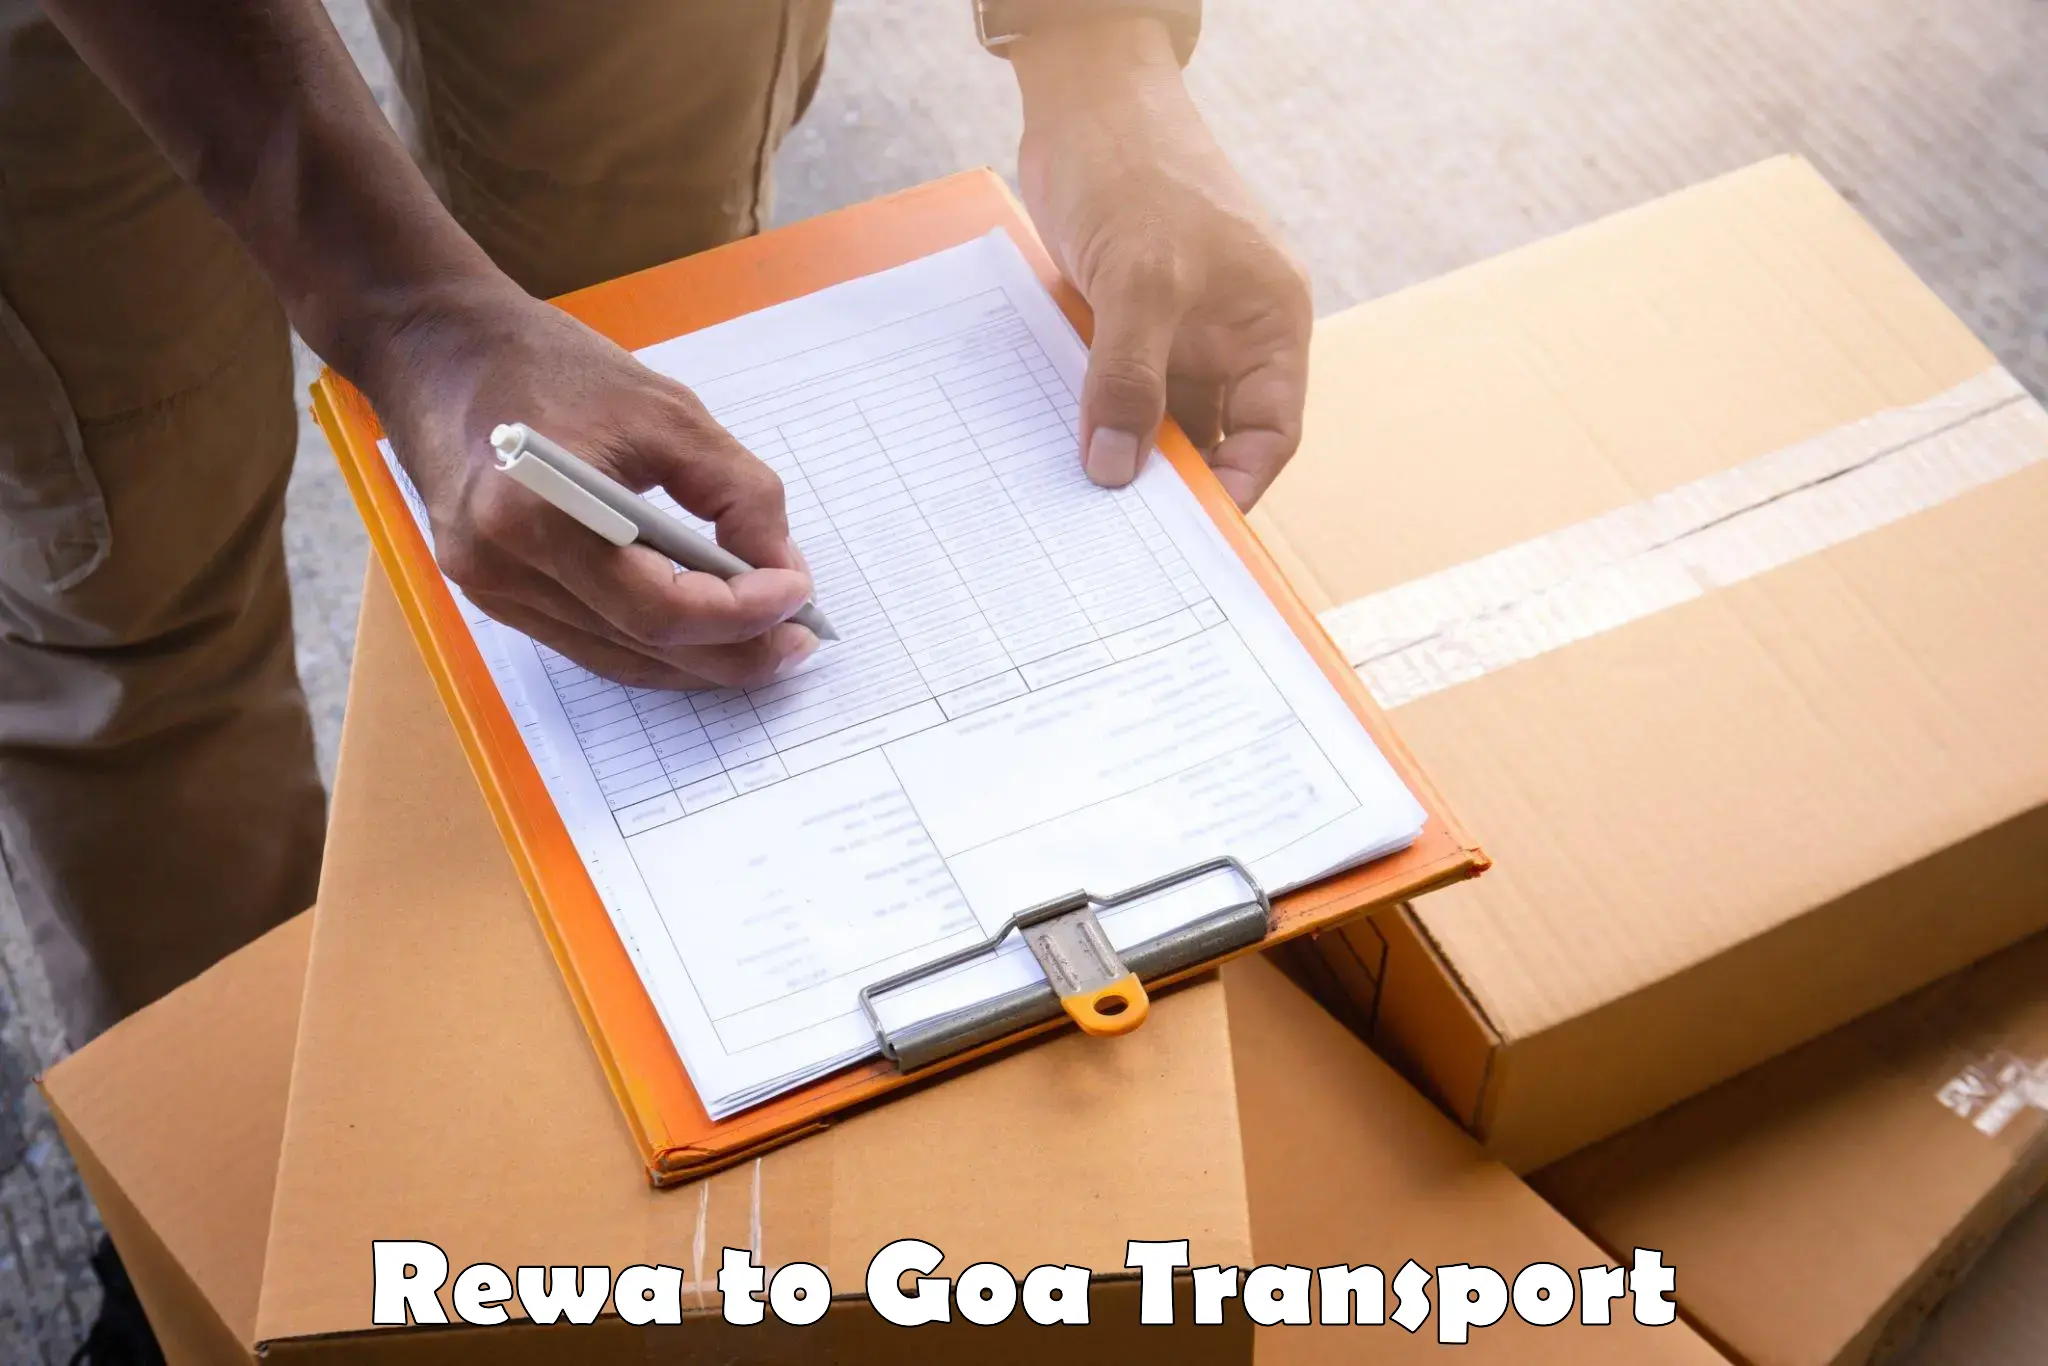 Nearest transport service Rewa to Panaji